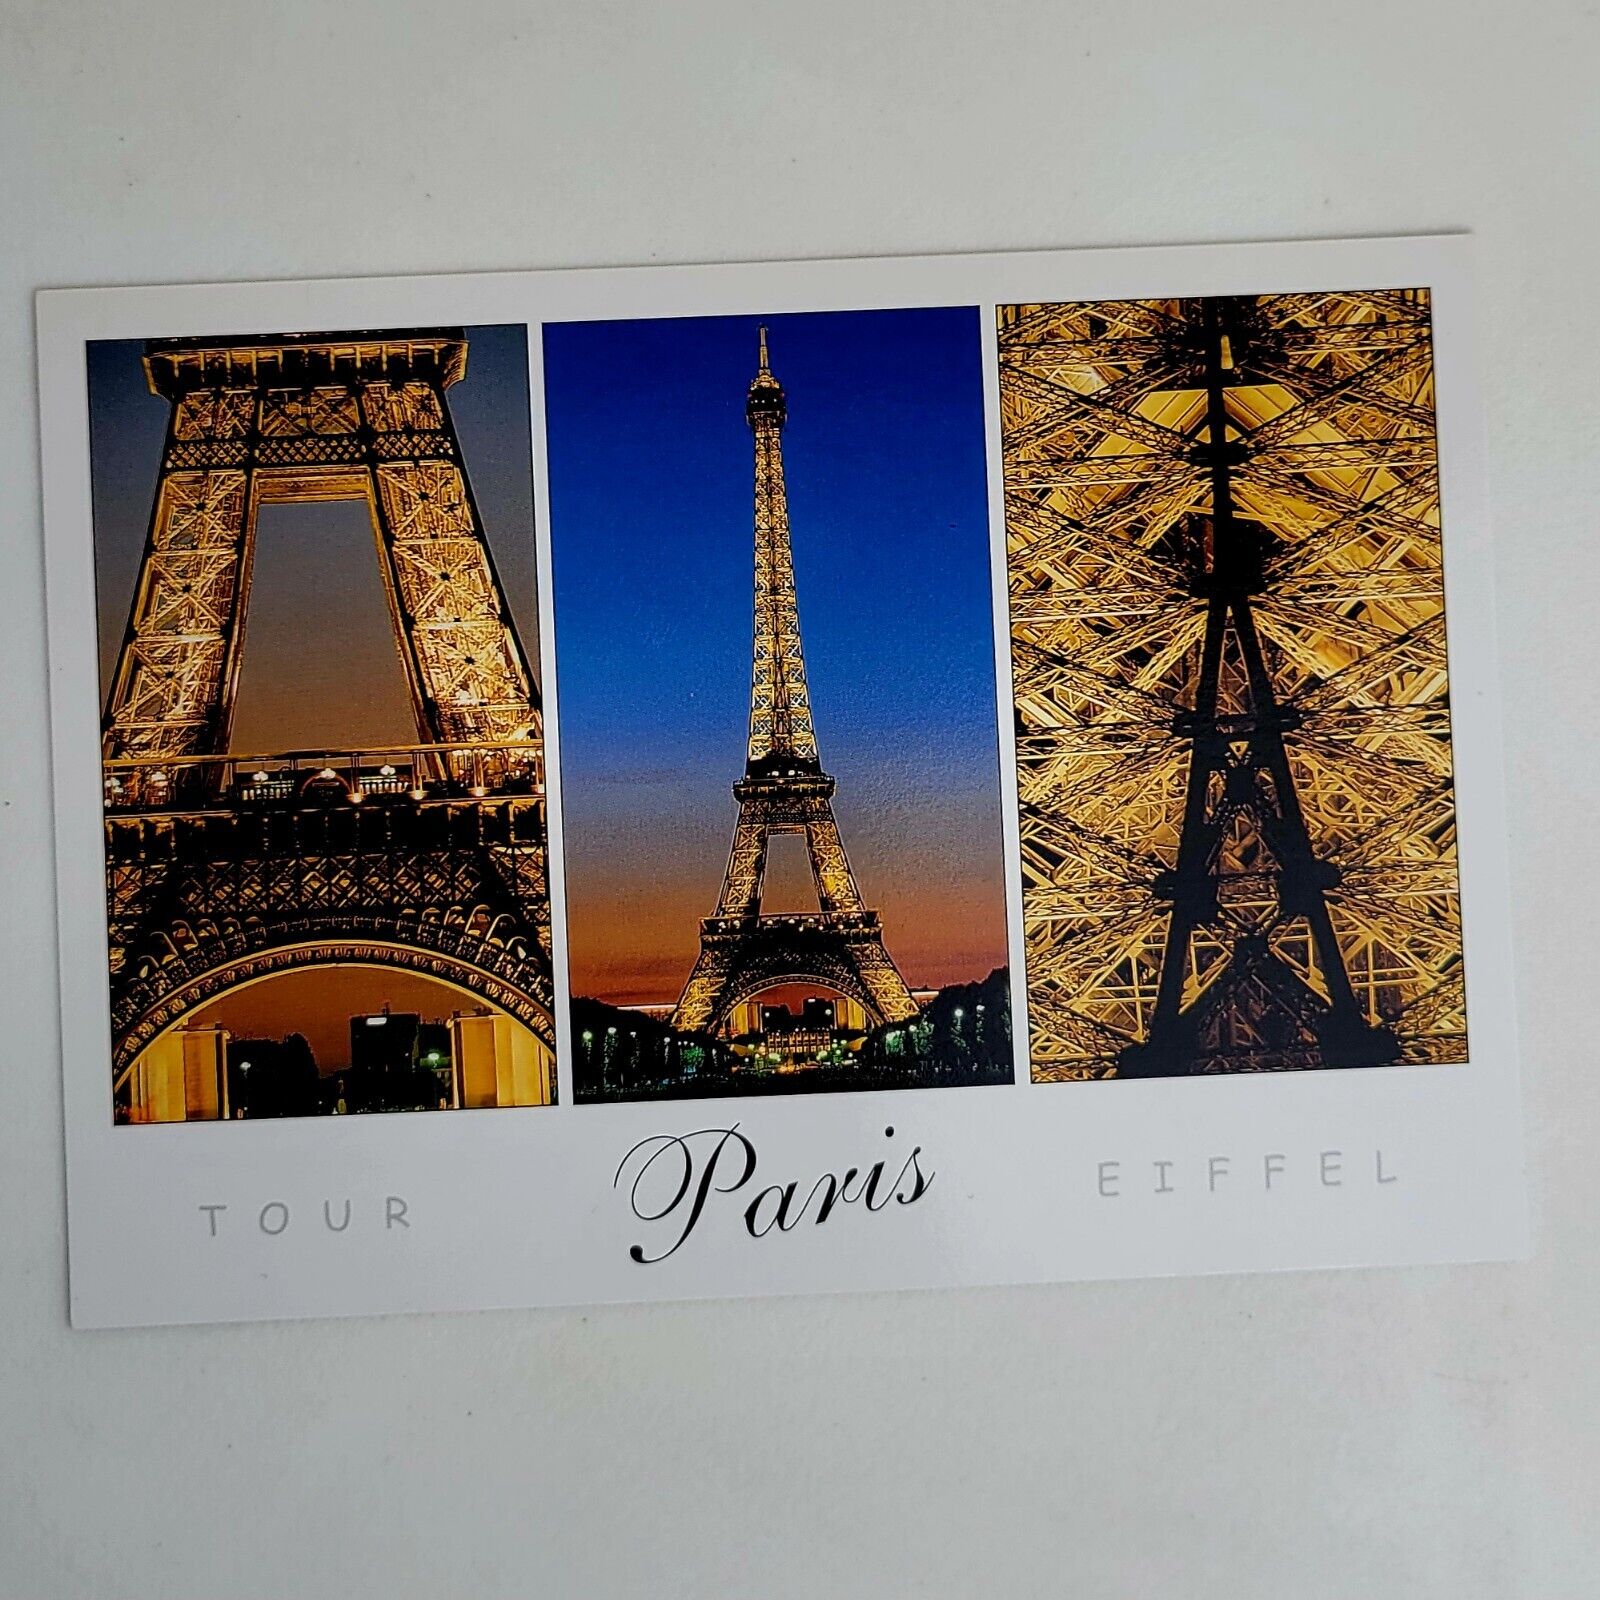 Vintage Postcard EIFFEL TOWER Paris, France Repro Unposted Nice Condition L👀K